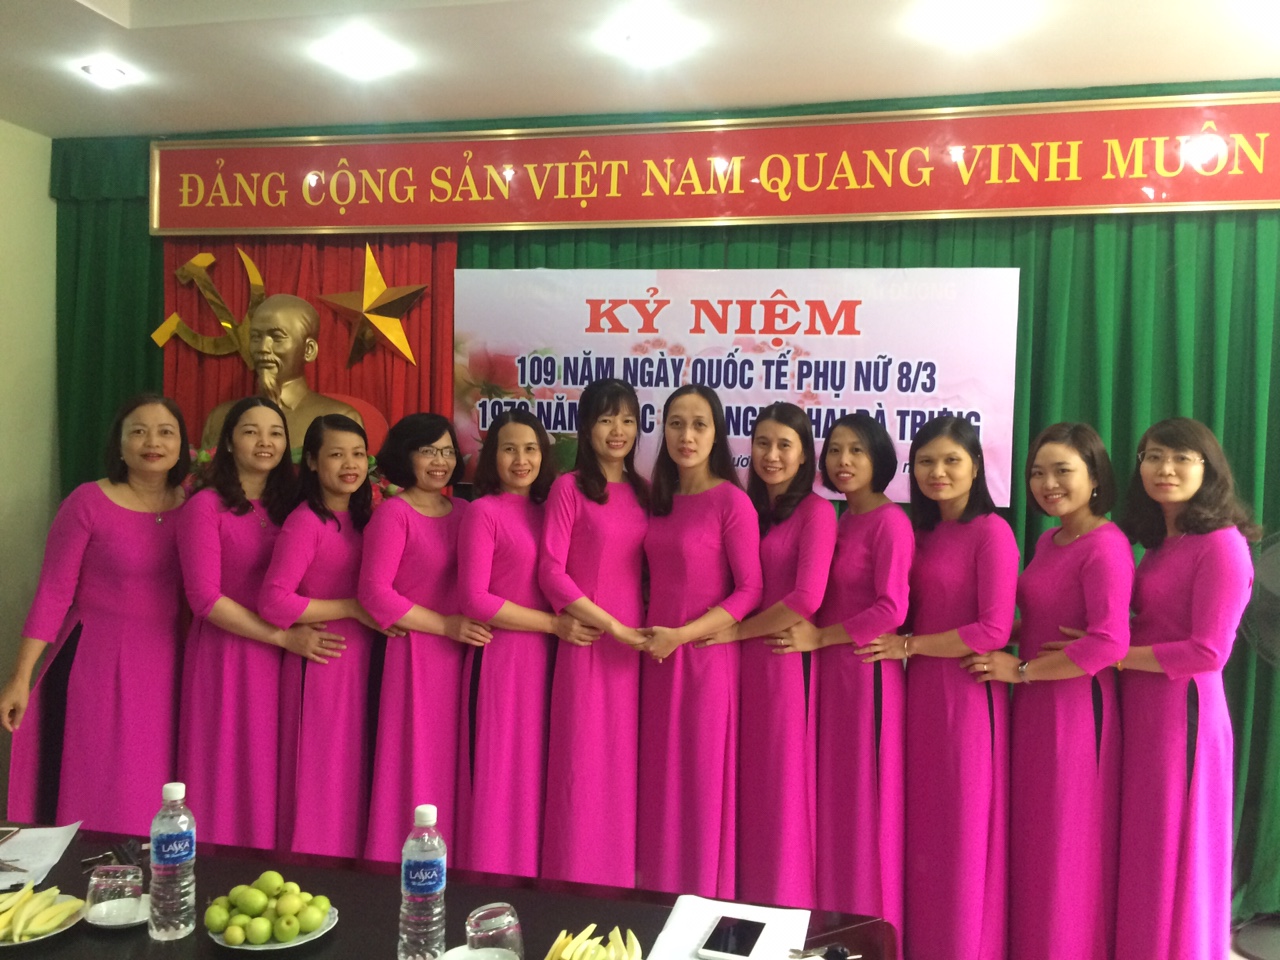 Cục THADS tỉnh Hải Dương tổ chức hội nghị Chúc mừng ngày quốc tế phụ nữ 8.3